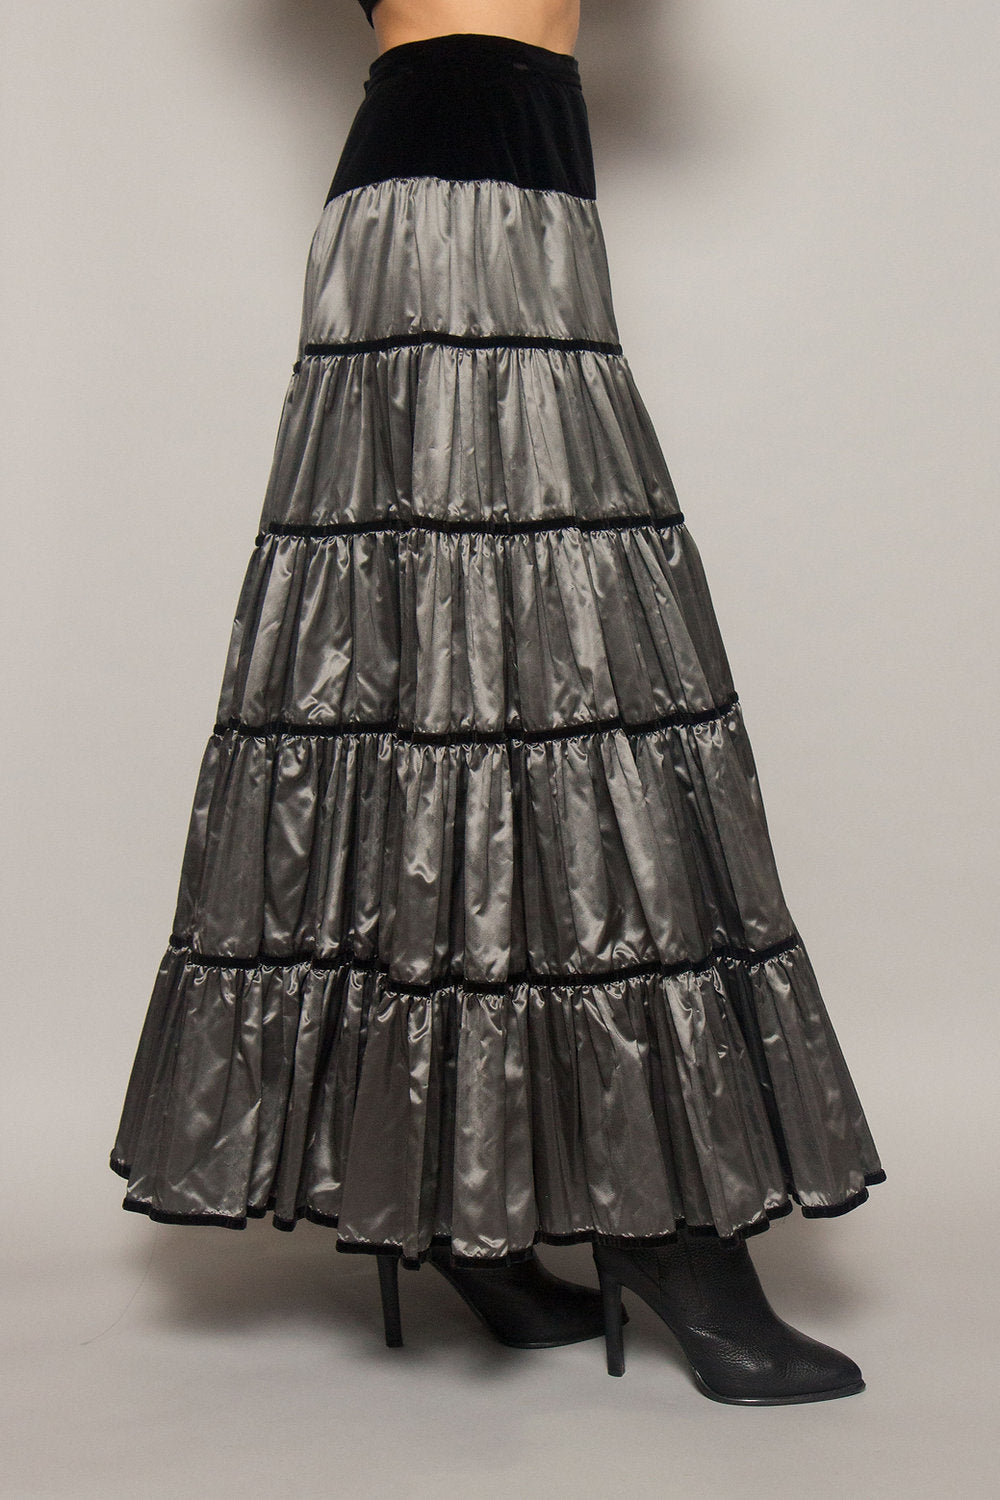 Yves Saint Laurent Silver Taffeta Ruffled Skirt